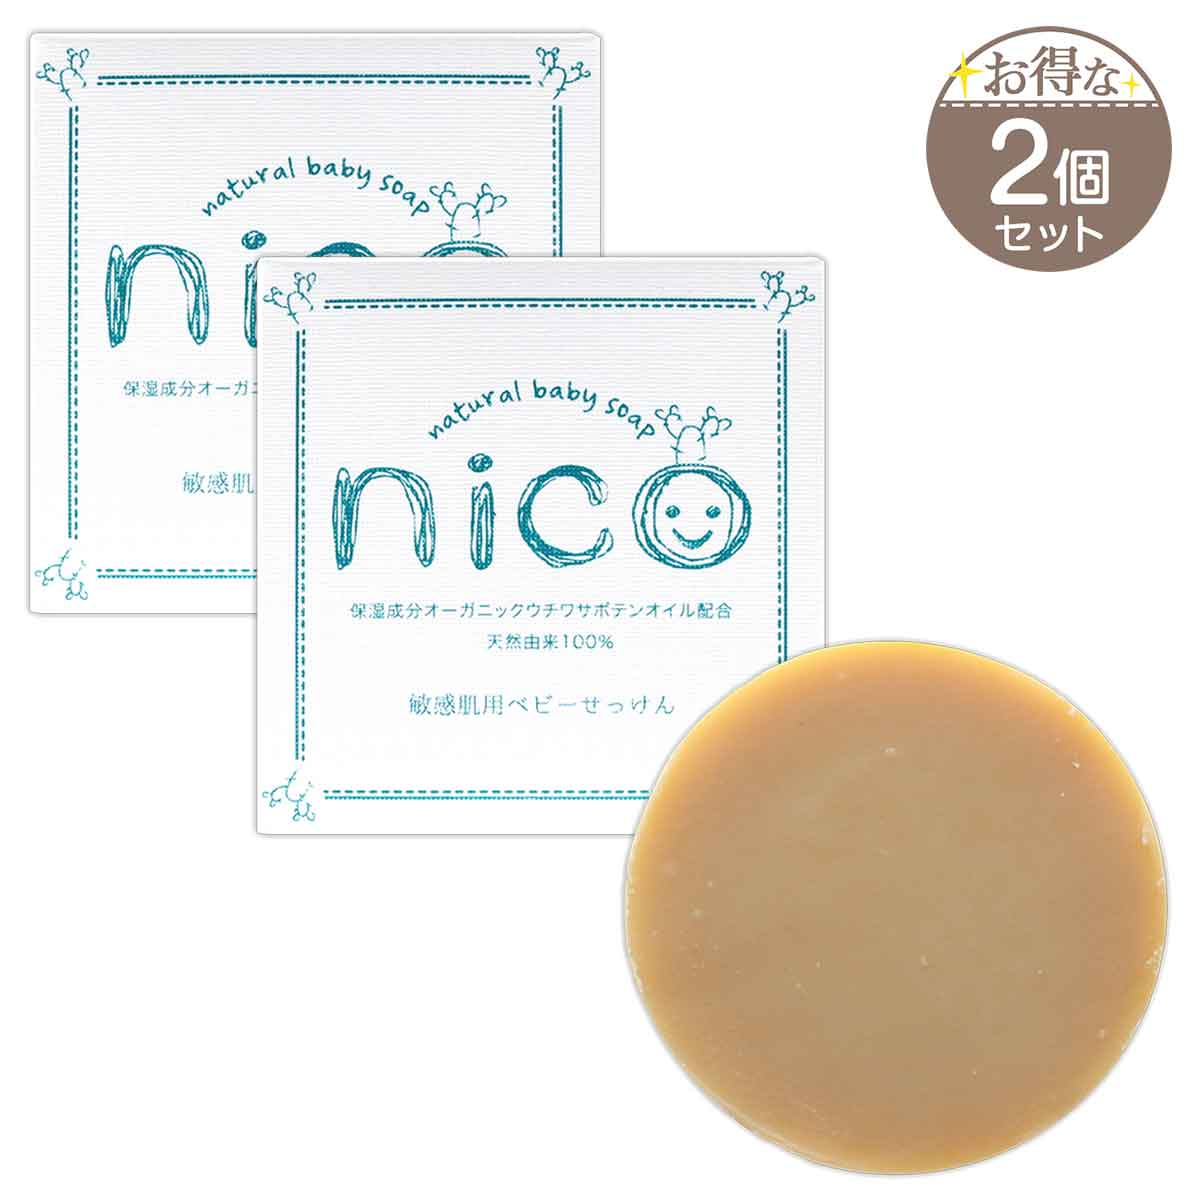 nico石鹸 ニコ石鹸 8個セット 天然由来 保湿成分 ベビー 50g即購入で